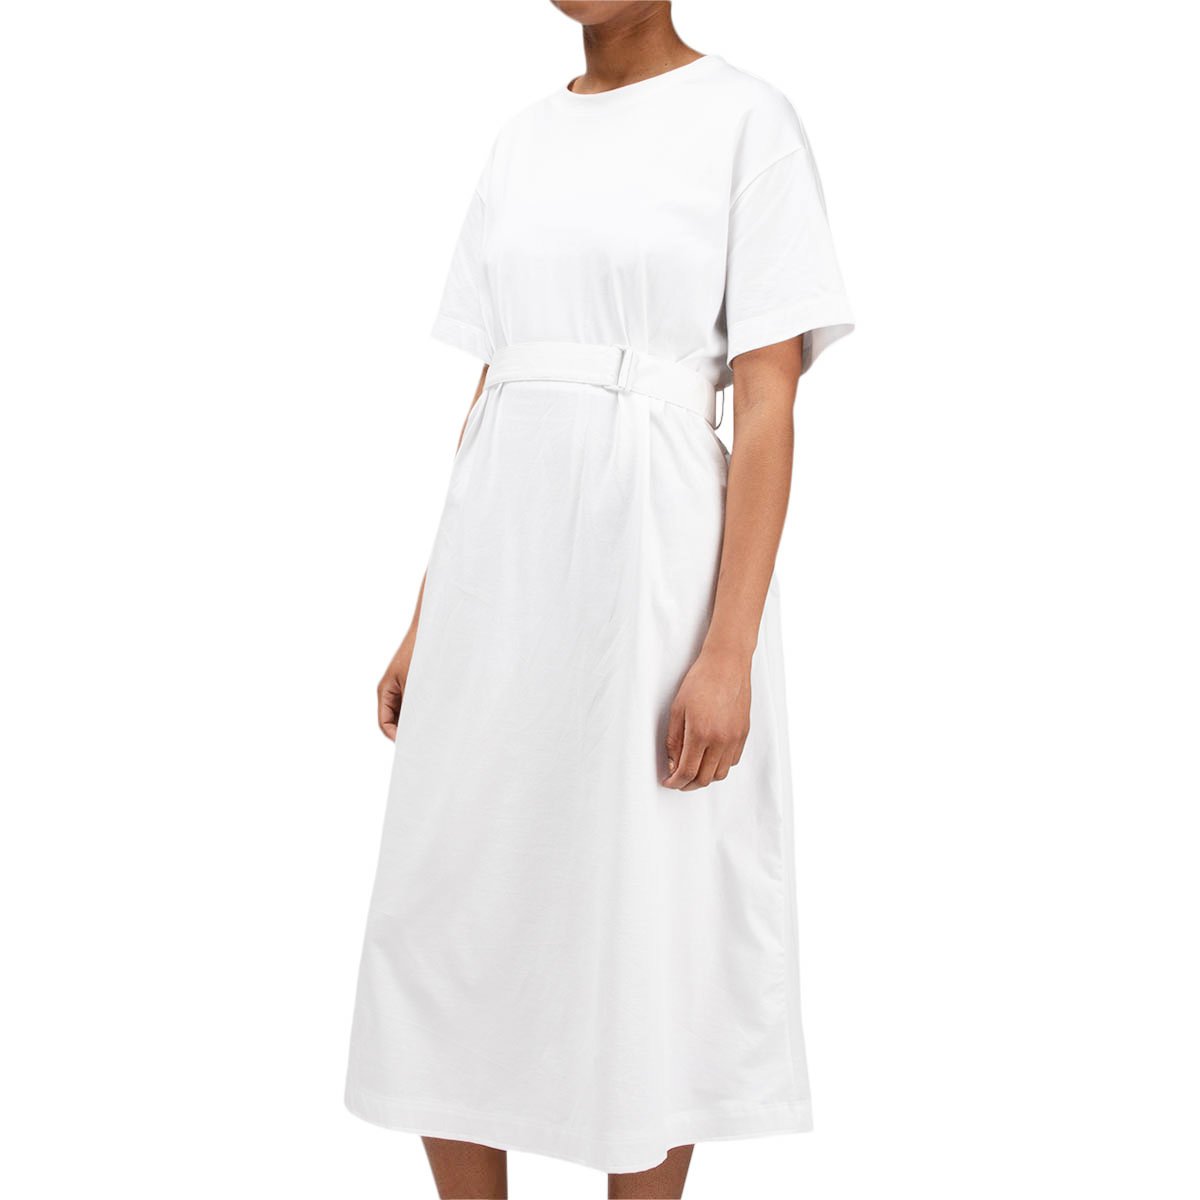 tee dress white